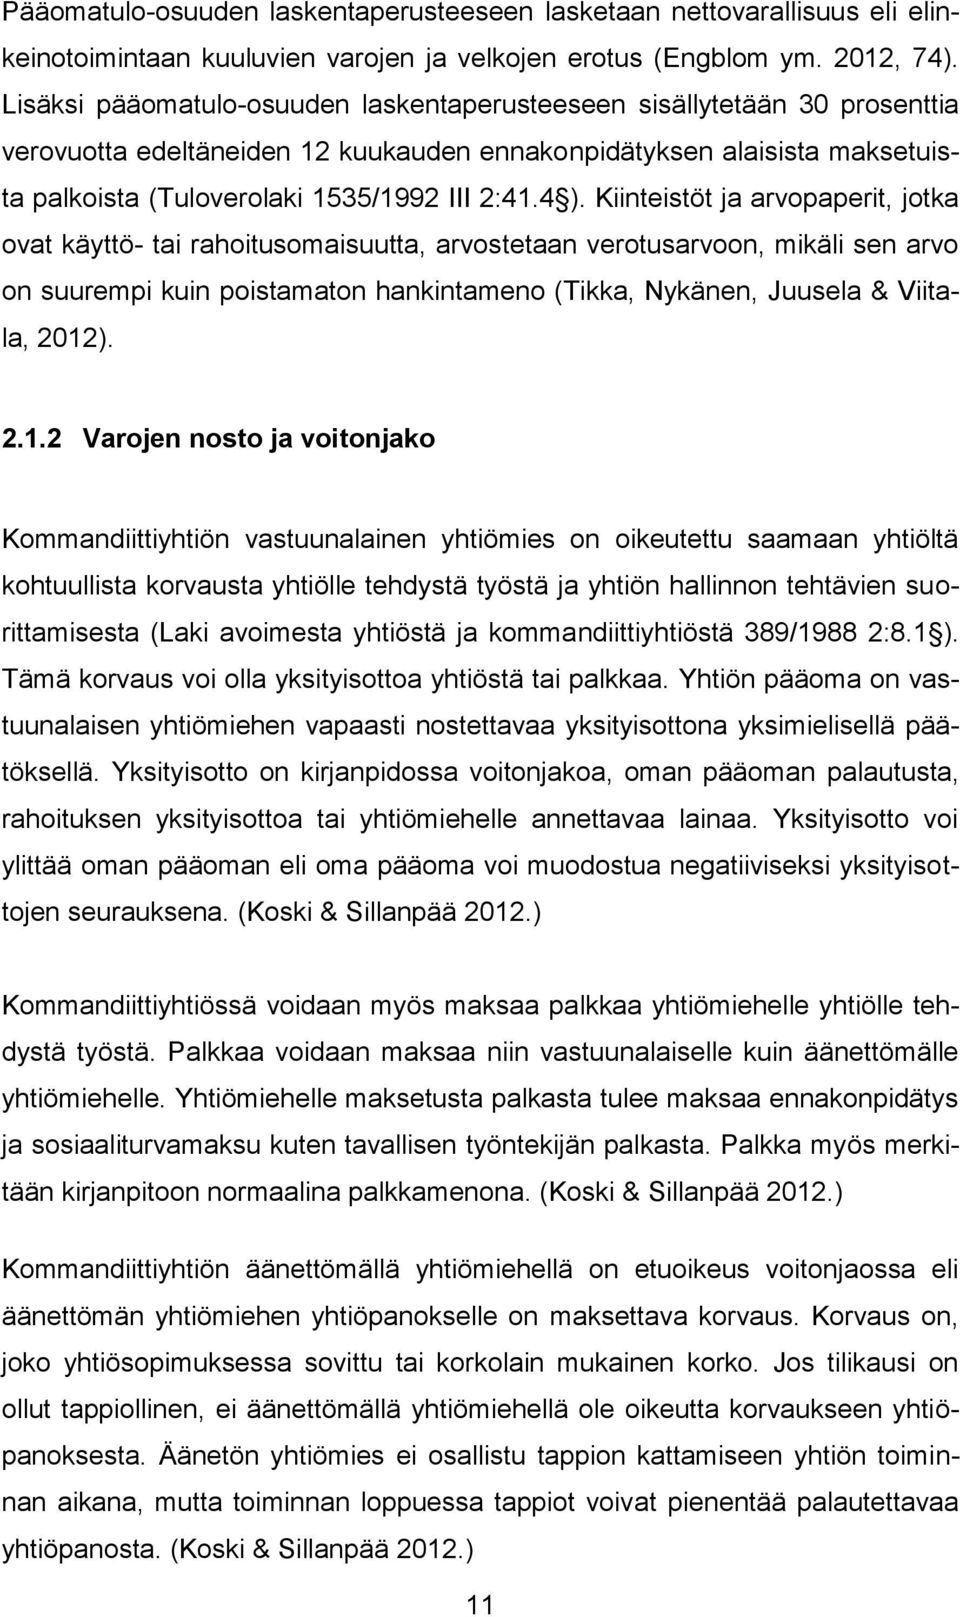 Kiinteistöt ja arvopaperit, jotka ovat käyttö- tai rahoitusomaisuutta, arvostetaan verotusarvoon, mikäli sen arvo on suurempi kuin poistamaton hankintameno (Tikka, Nykänen, Juusela & Viitala, 2012).